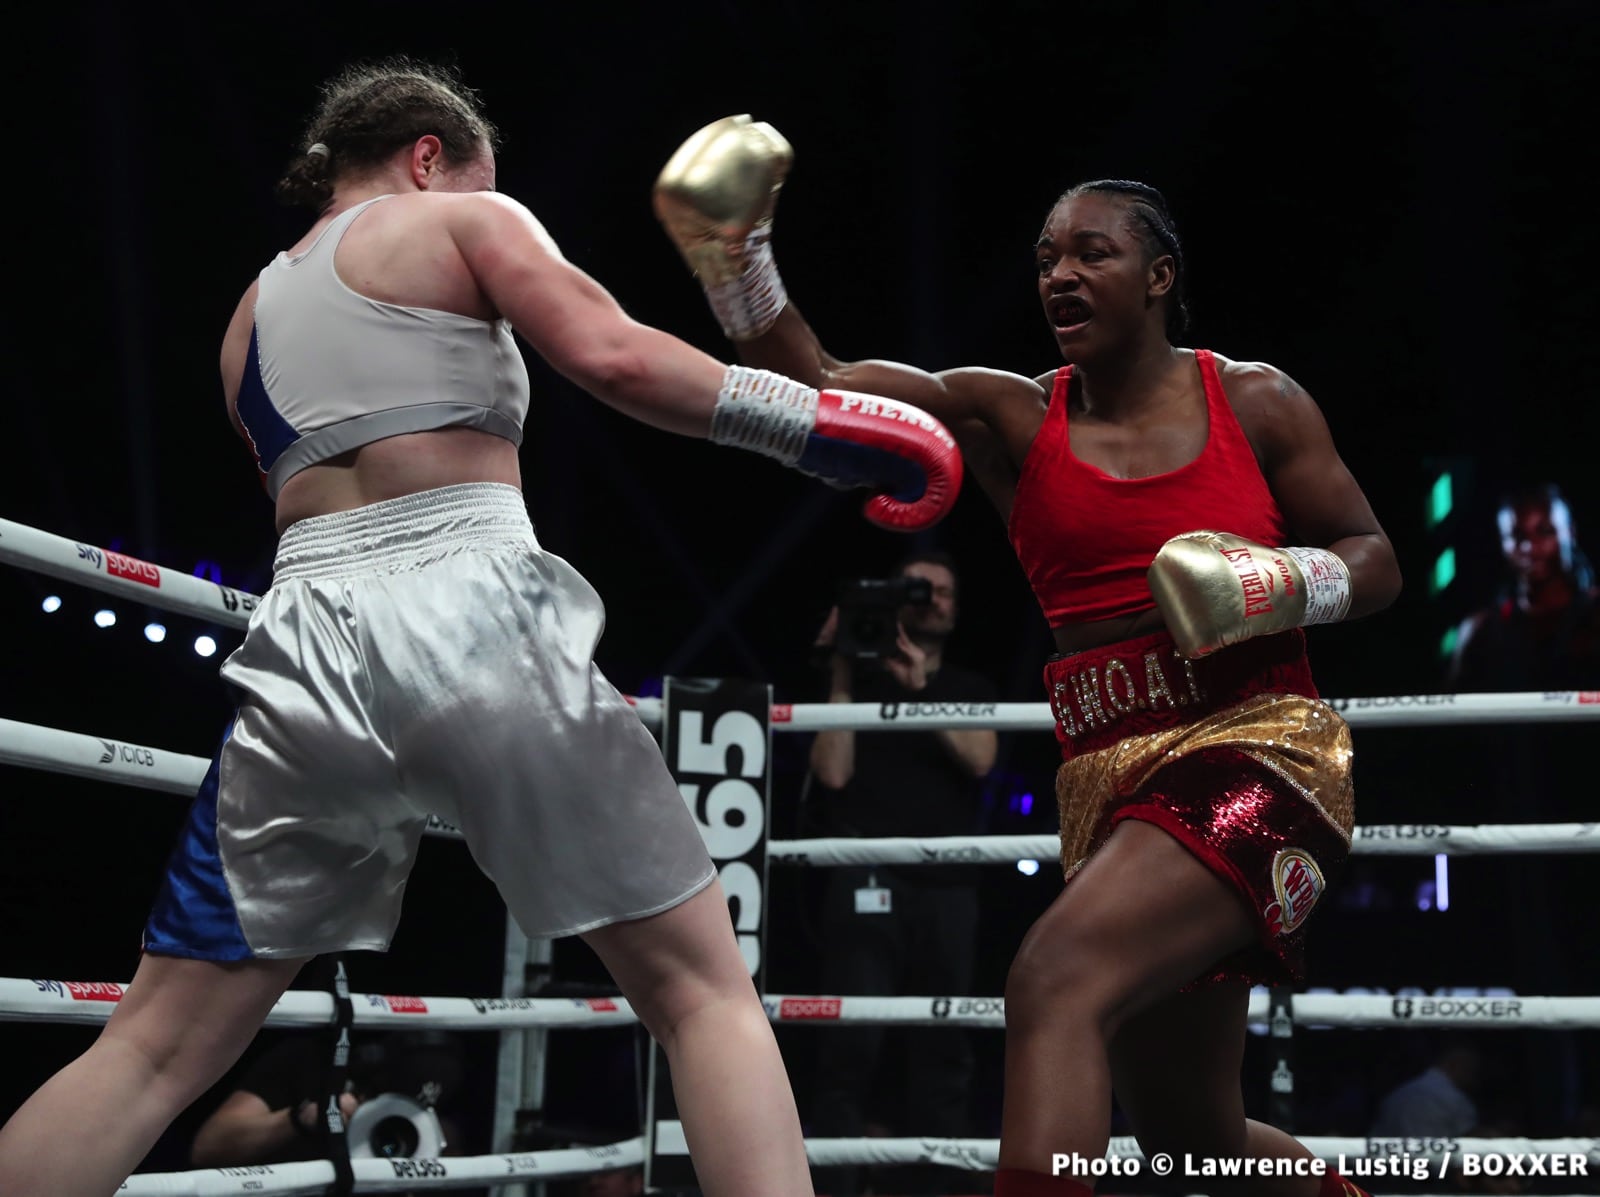 Claressa Shields boxing image / photo